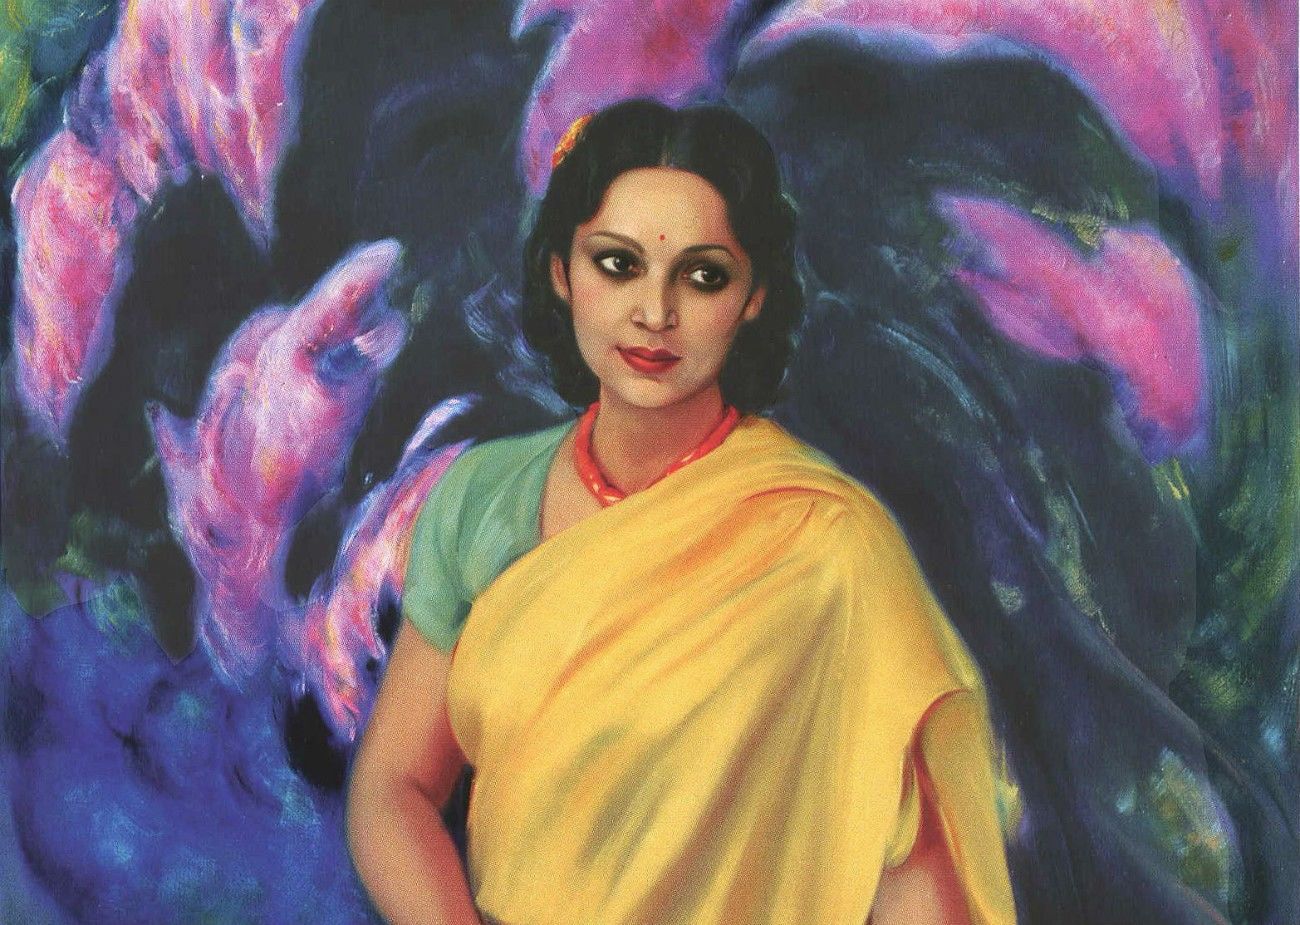 जन्मदिन विशेष: हिन्दी सिनेमा की पहली ड्रीम गर्ल थीं देविका रानी  